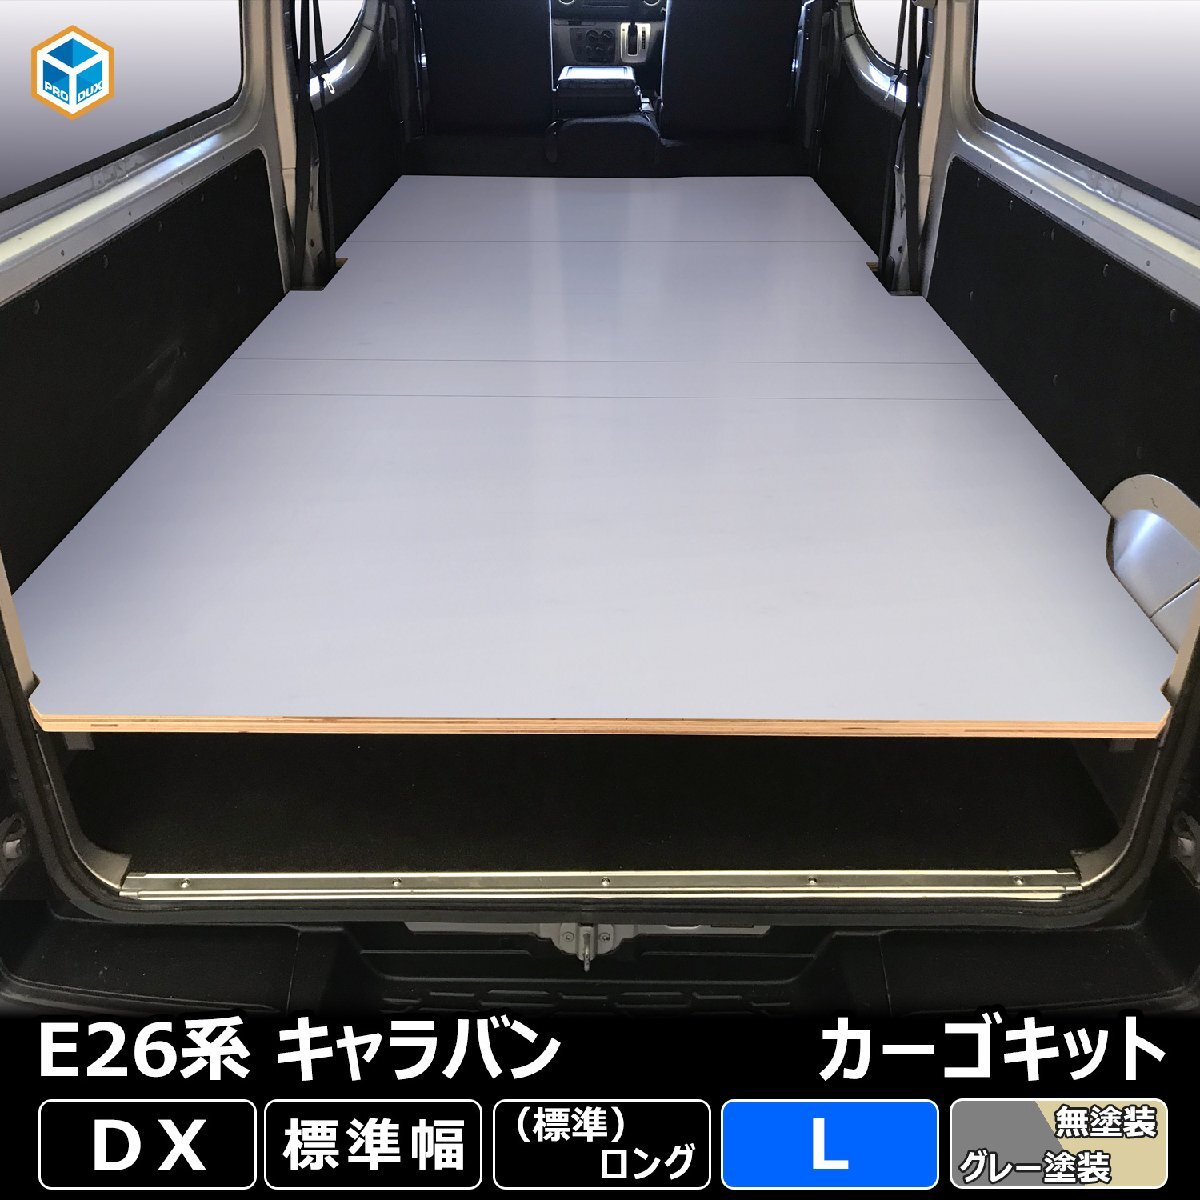 日産 NV350 キャラバン DX カーゴキット L【グレー×ヒーター無し】| ベッドキット ベッド ベットキット キット 棚 板 収納 収納棚 格納_加工希望により形状が画像と変わります。